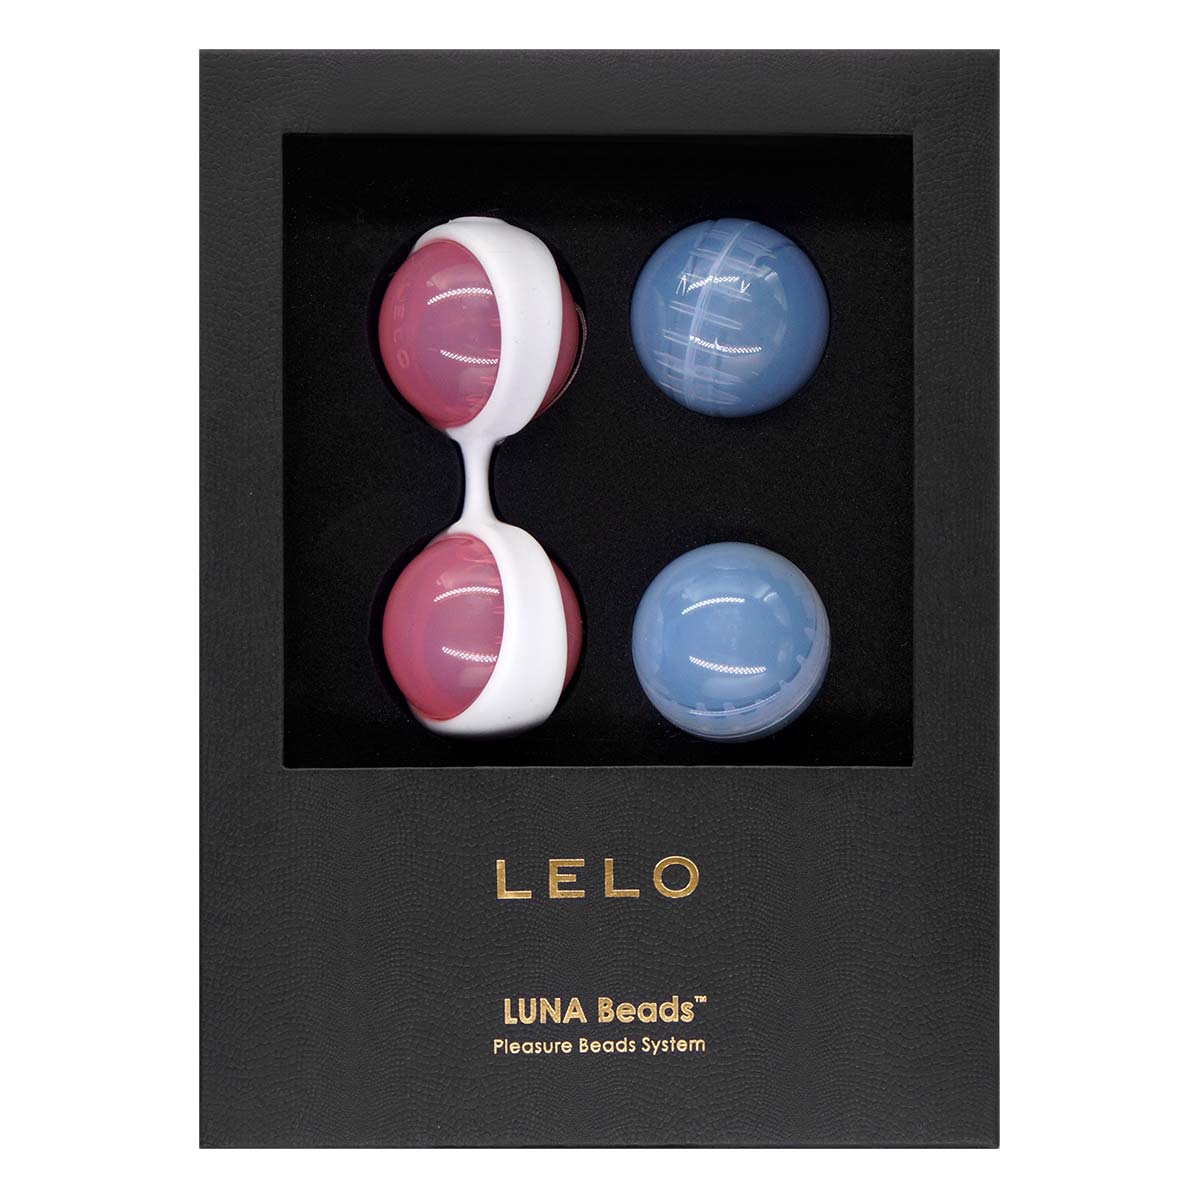 LELO Luna Beads 健康情趣縮陰球 - 經典款-p_2